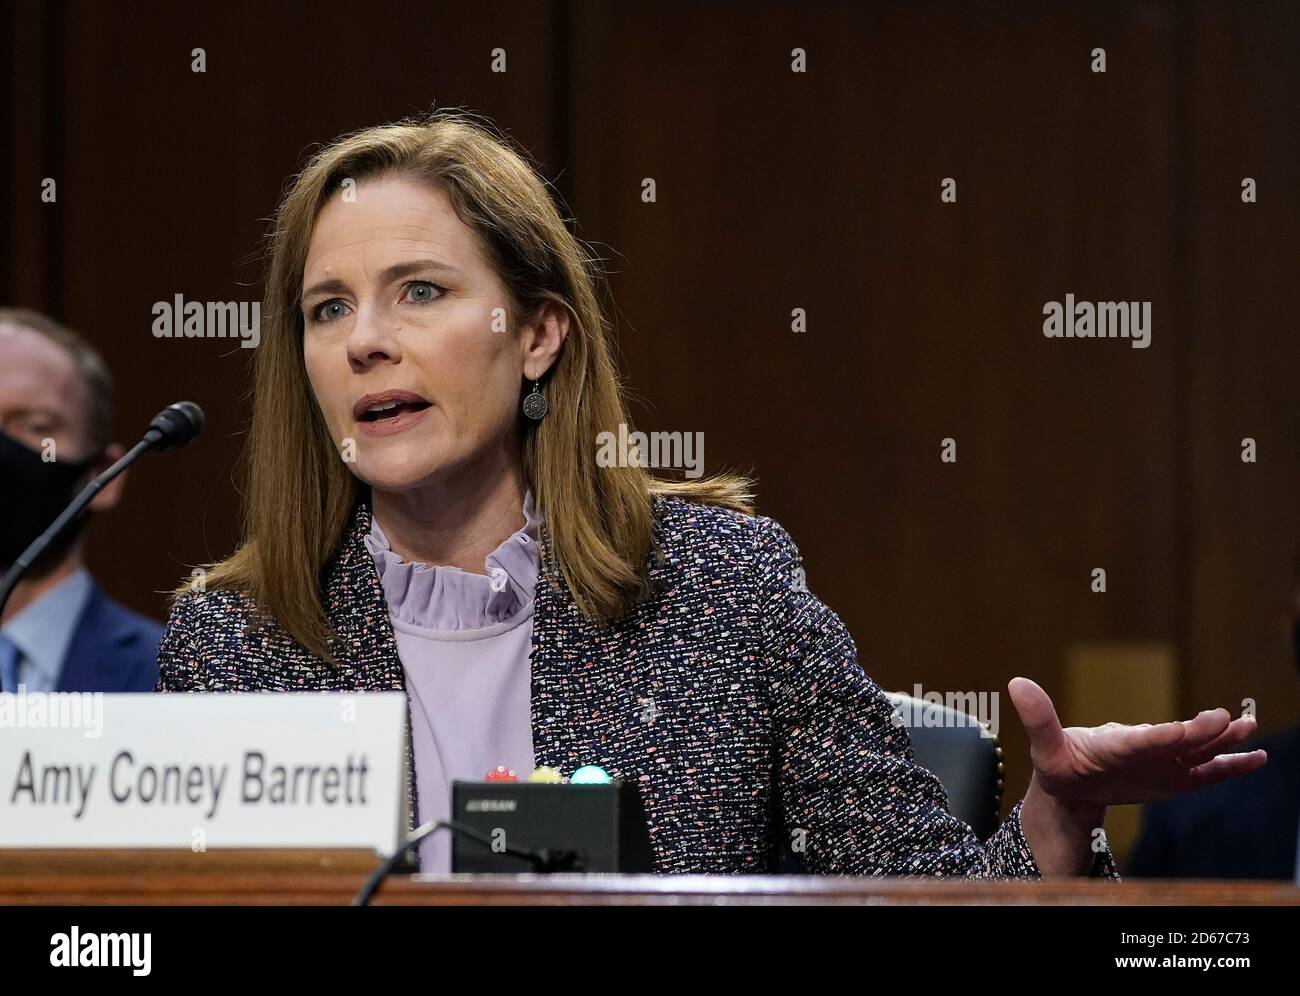 (201014) -- WASHINGTON, 14. Oktober 2020 (Xinhua) -- Amy Coney Barrett, Kandidatin des Obersten Gerichtshofs der USA, nimmt an ihrer Bestätigungsverhandlung vor dem Justizausschuss des Senats auf dem Capitol Hill in Washington, DC, USA, am 14. Oktober 2020 Teil. (Drew Angerer/Pool über Xinhua) Stockfoto